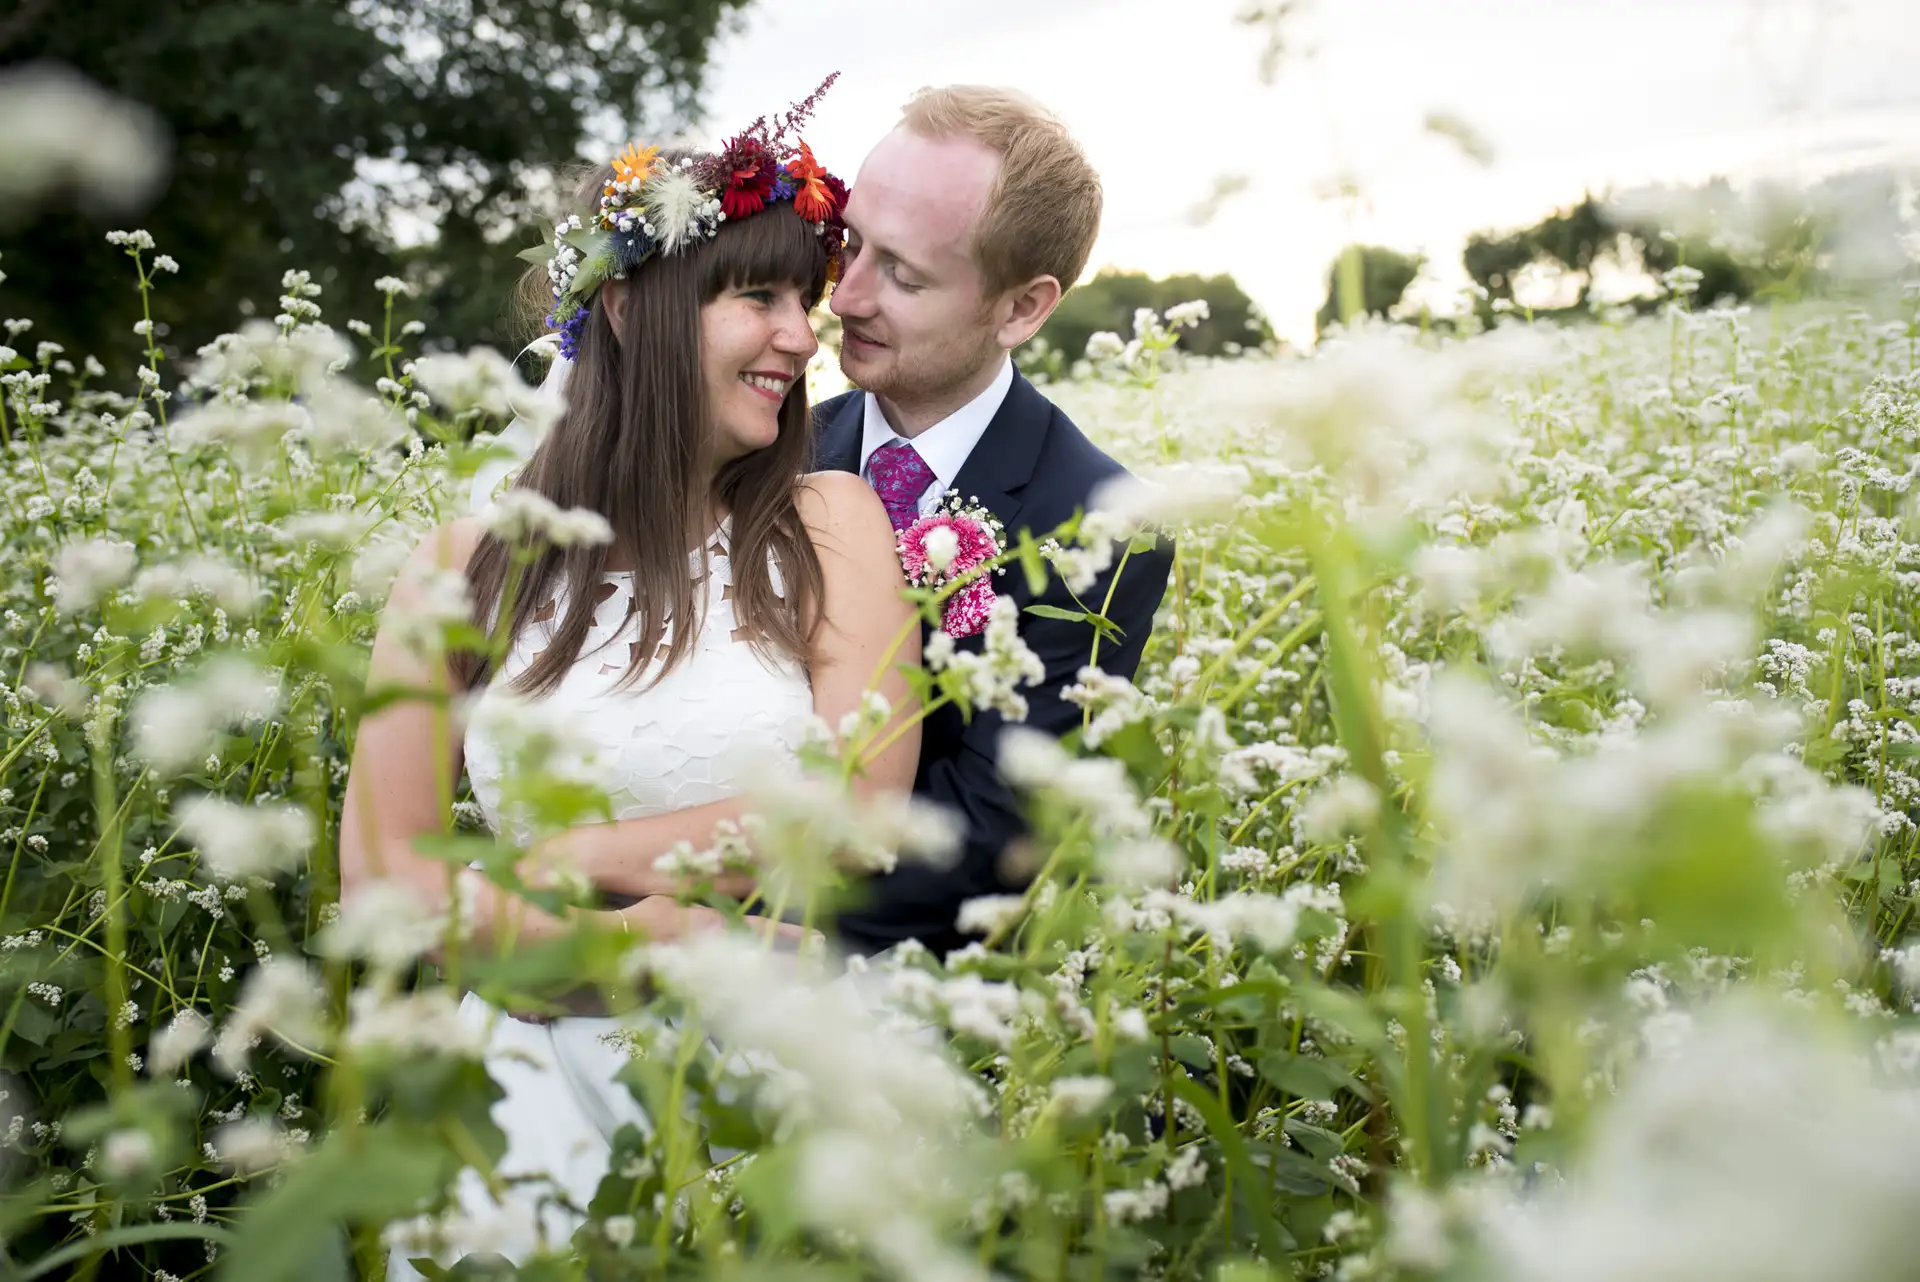 Mariage pas cher - photographe de mariage Lyon Clermont Ferrand séance couple dans un champ de fleurs blanches